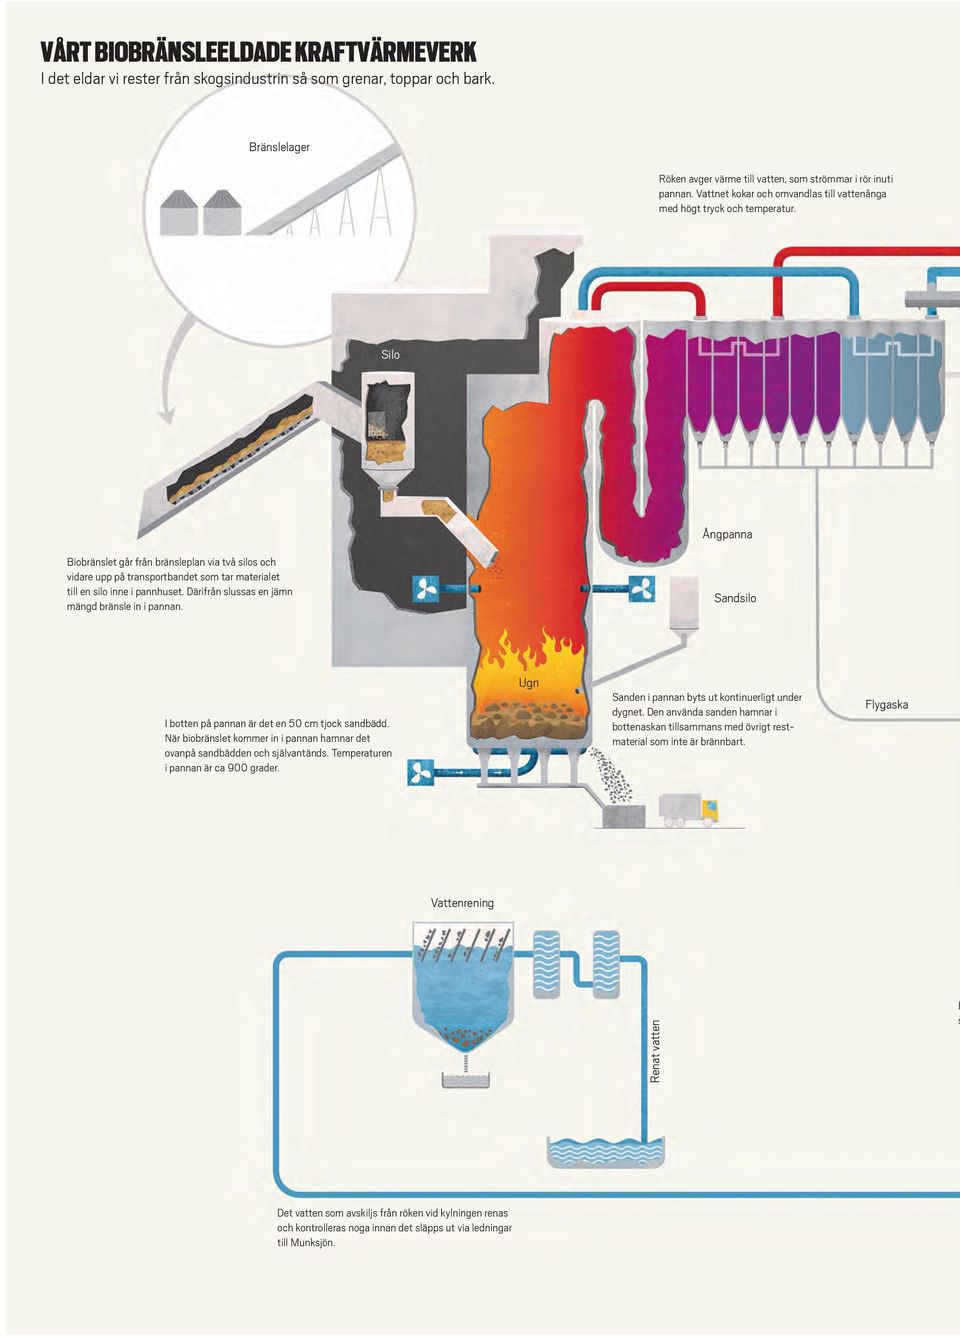 Silo Ångpanna Biobränslet går från bränsleplan via två silos och vidare upp på transportbandet som tar materialet till en silo inne i pannhuset. Därifrån slussas en jämn mängd bränsle in i pannan.